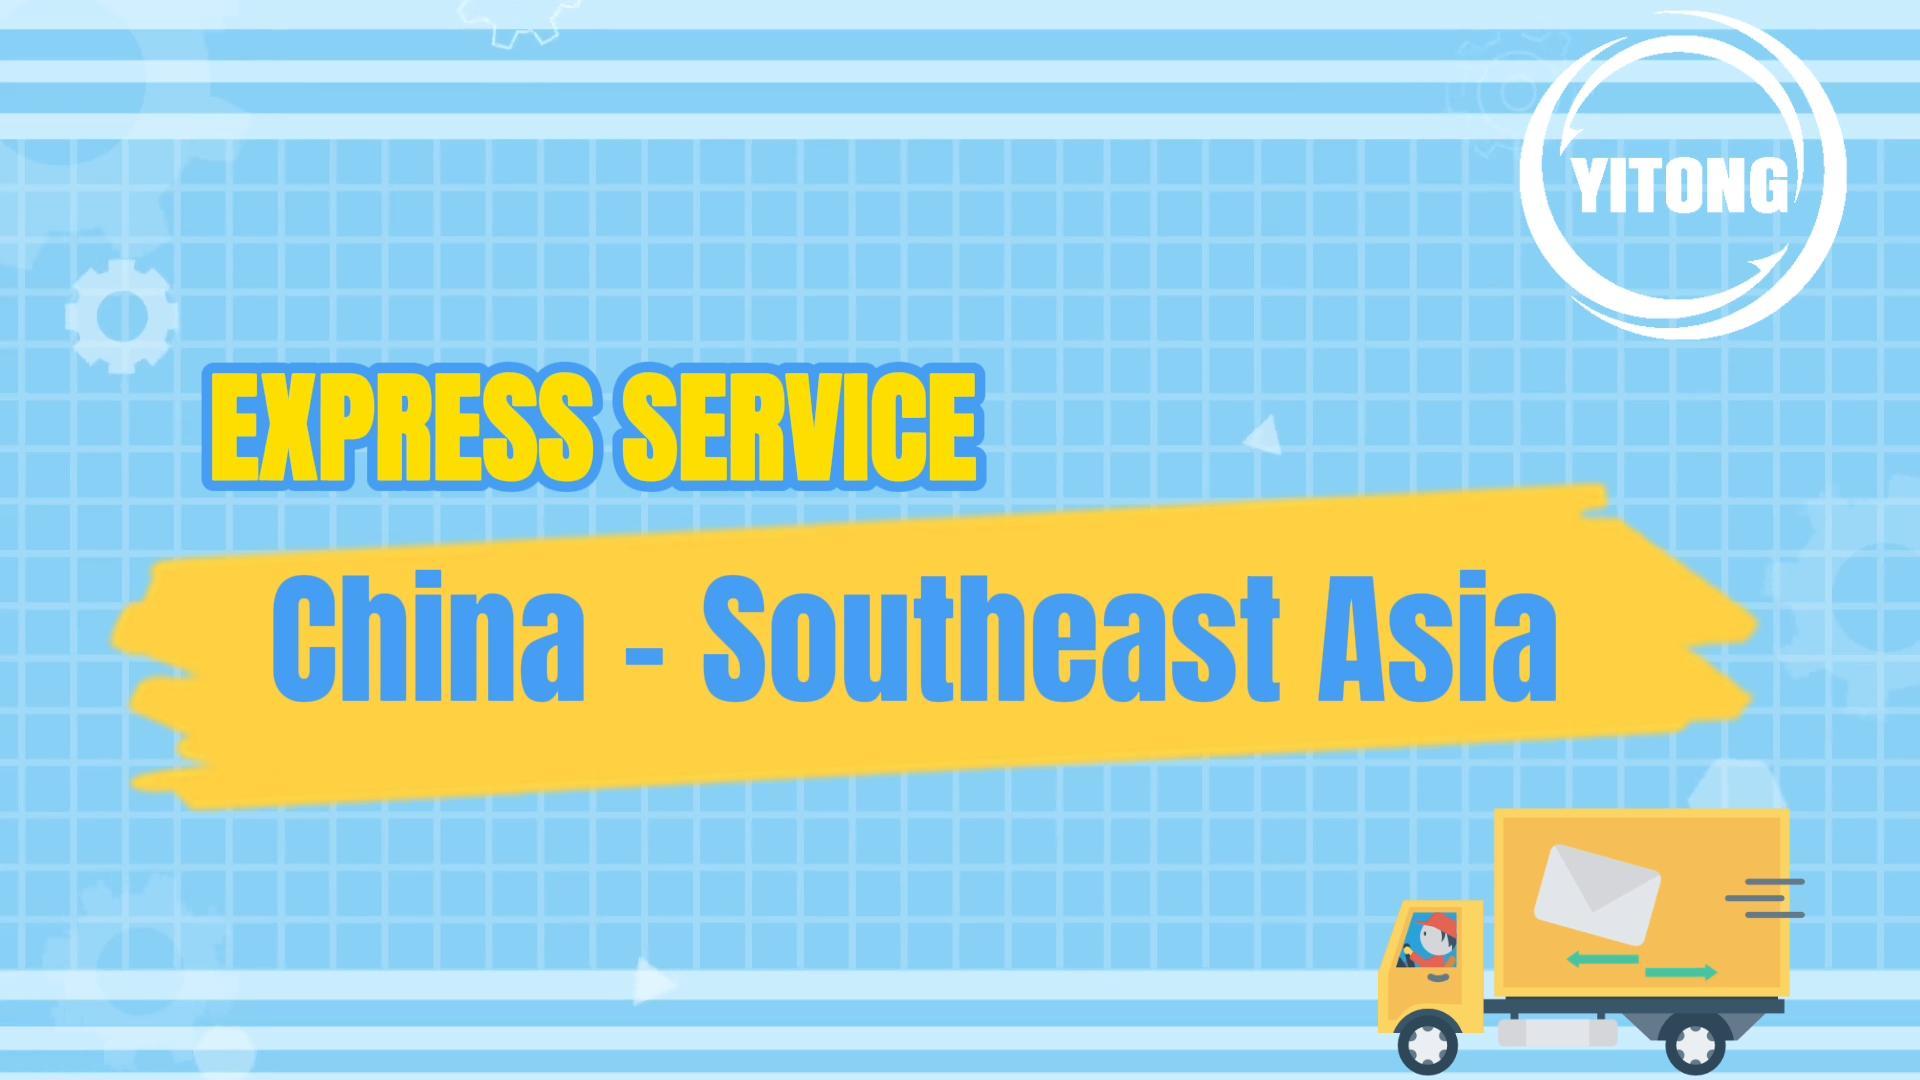 Yitong Express Service Serviceは中国から東南アジまで